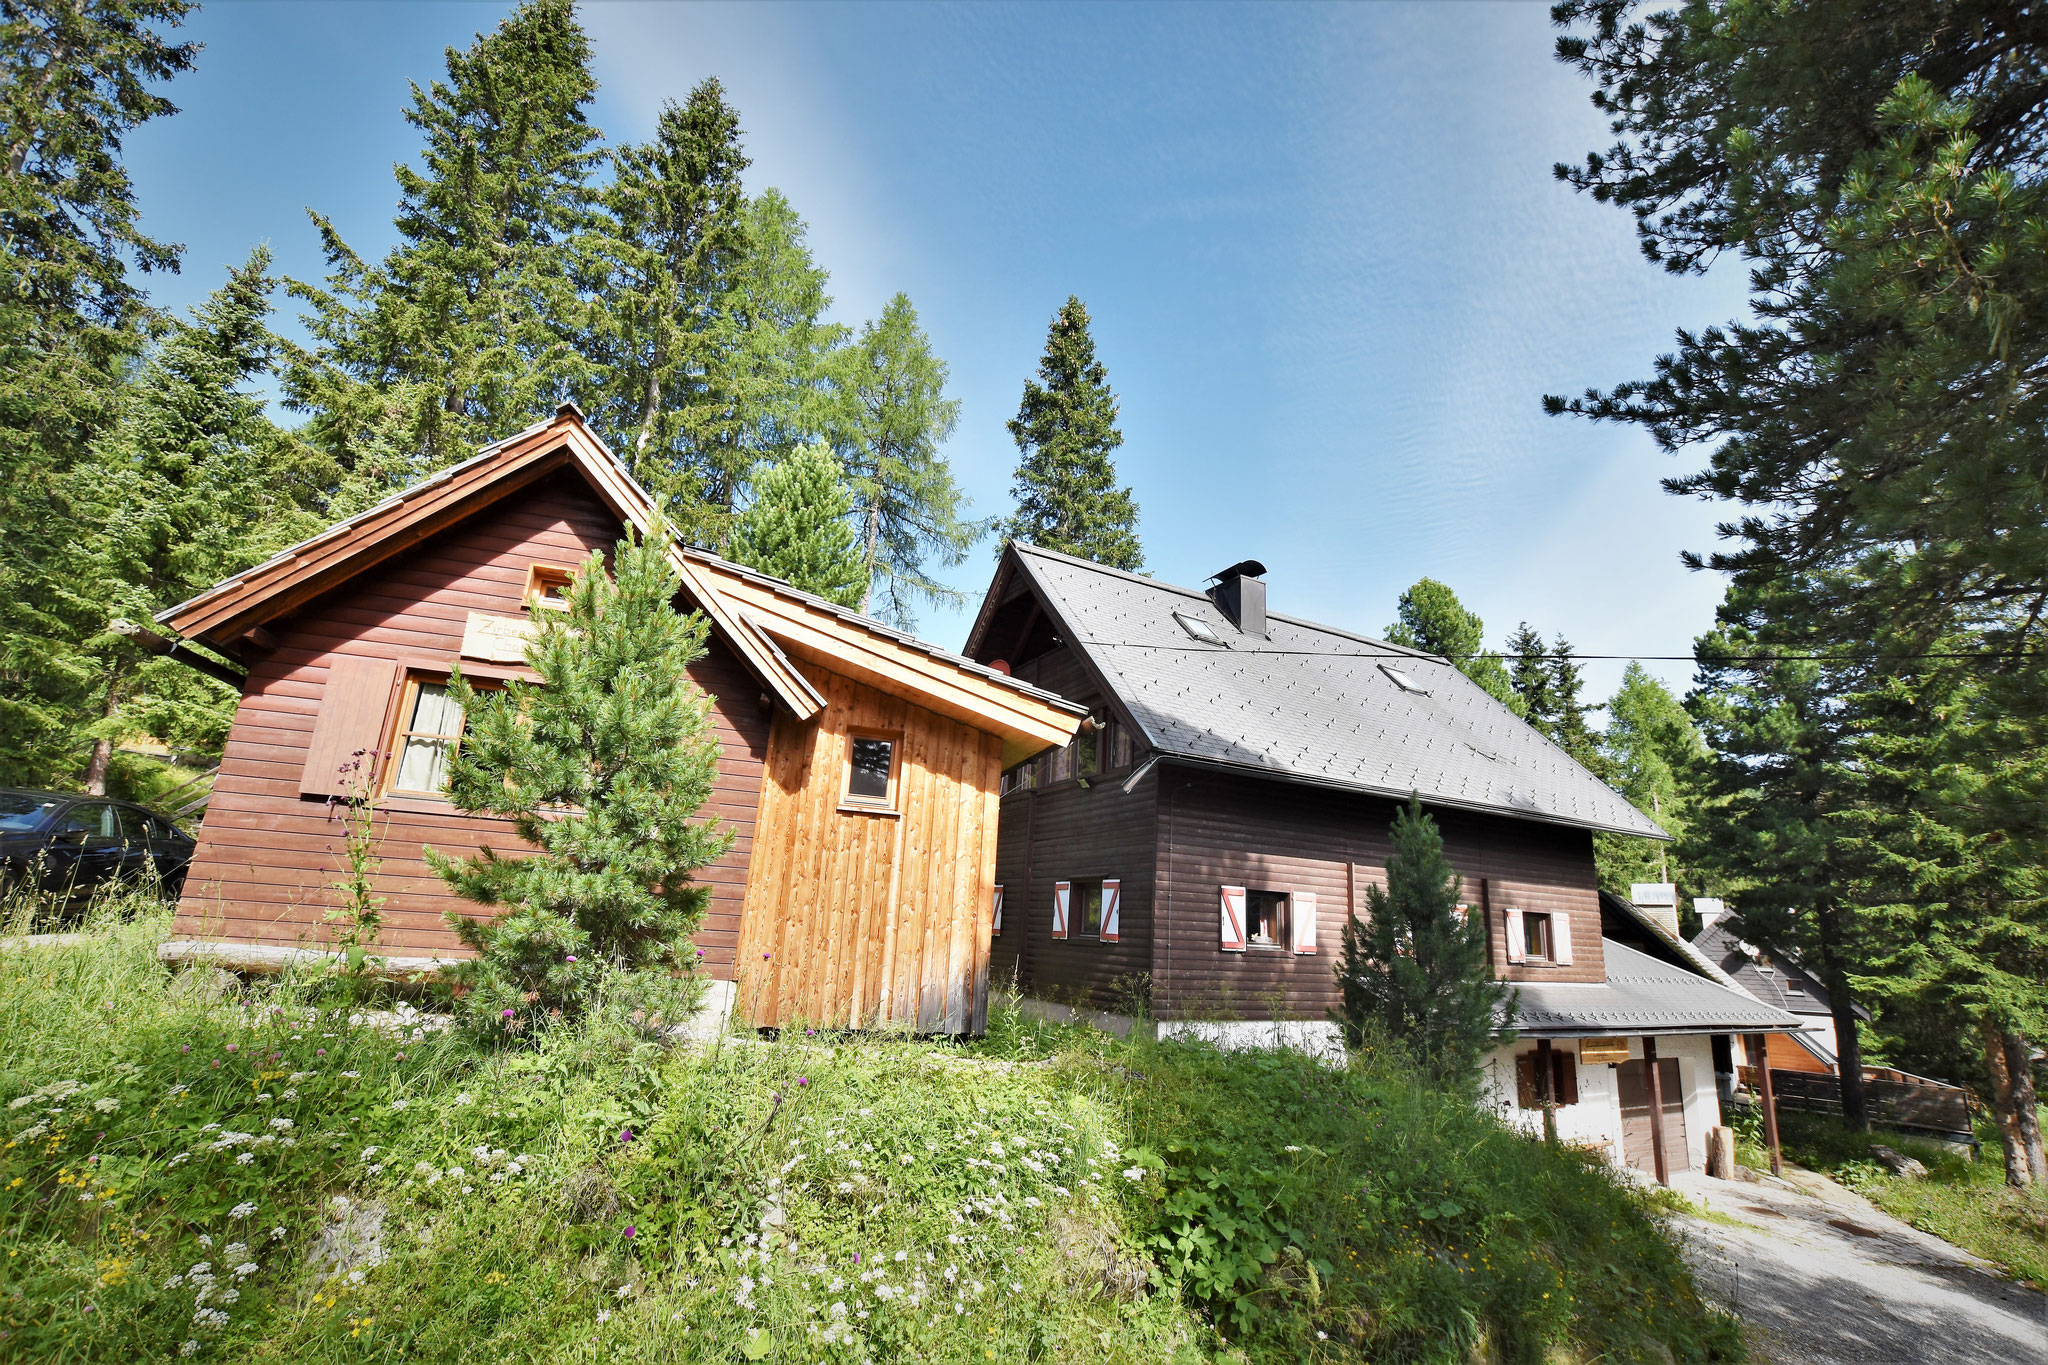 Zirbenwald-Chalet & Zirbenwald-Lodge